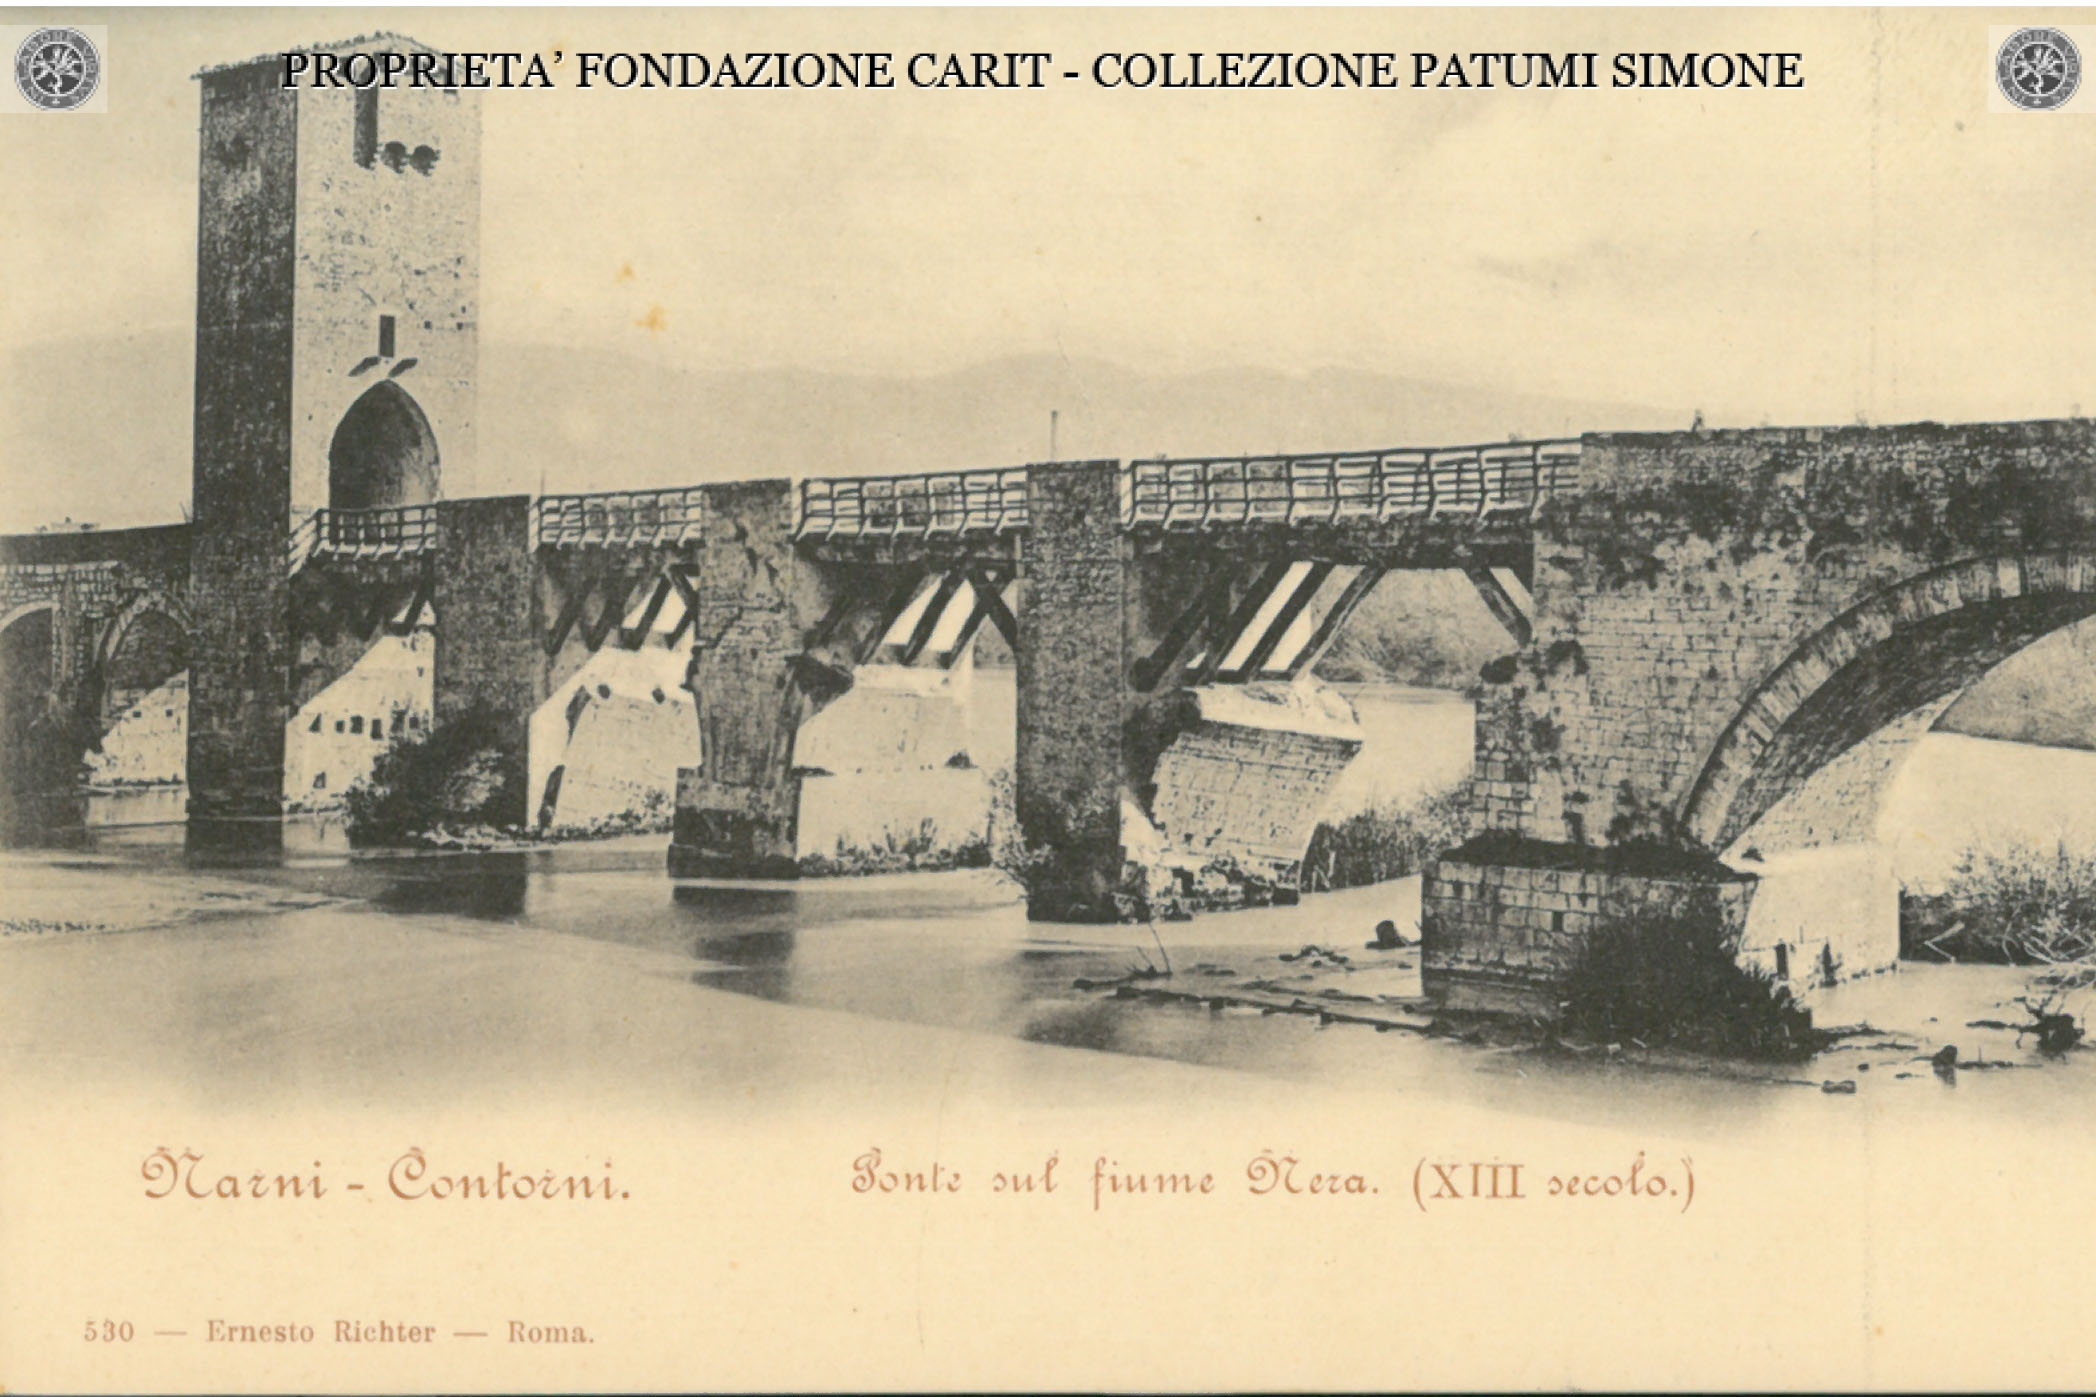 1899 ca Narni Collection Patumi Simone, Cassa di Risparmio di Narni e Terni